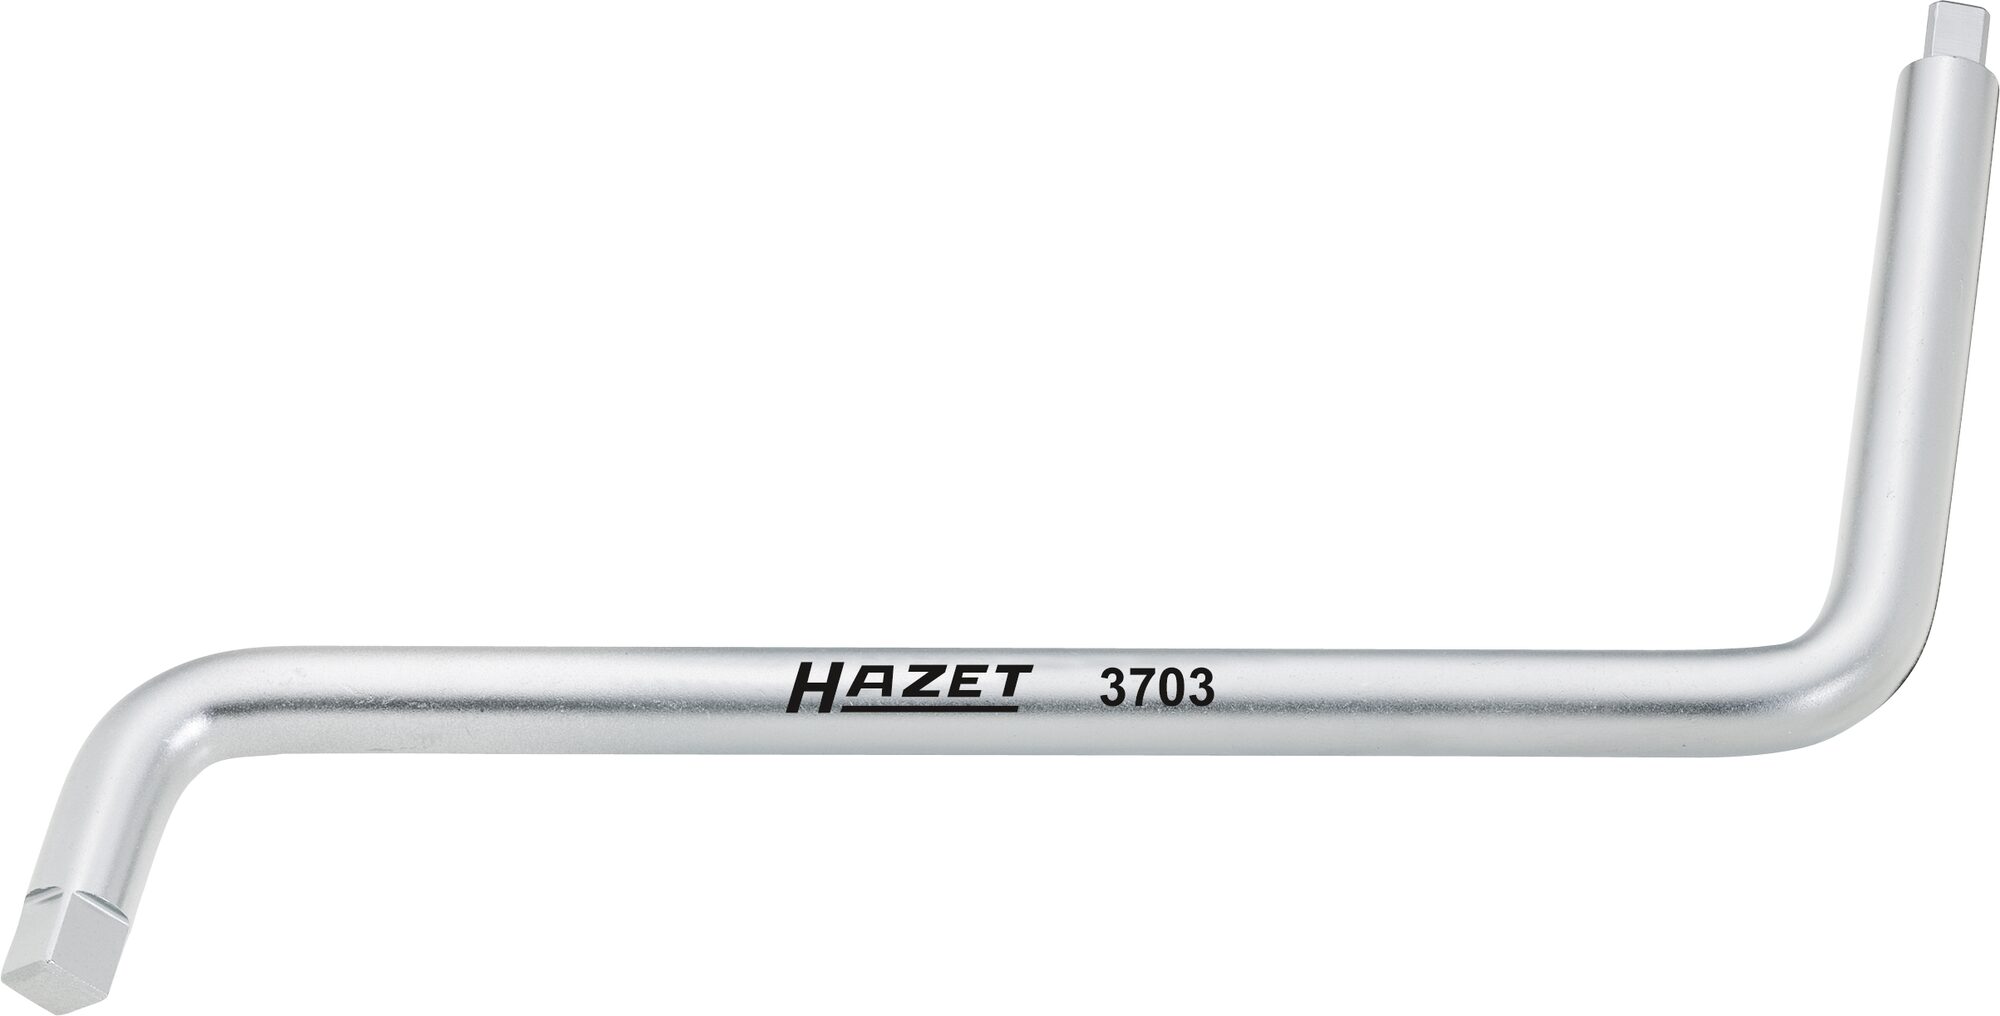 HAZET Öldienst-Schlüssel 3703 · Innen Vierkant Profil · 8 x 10 mm